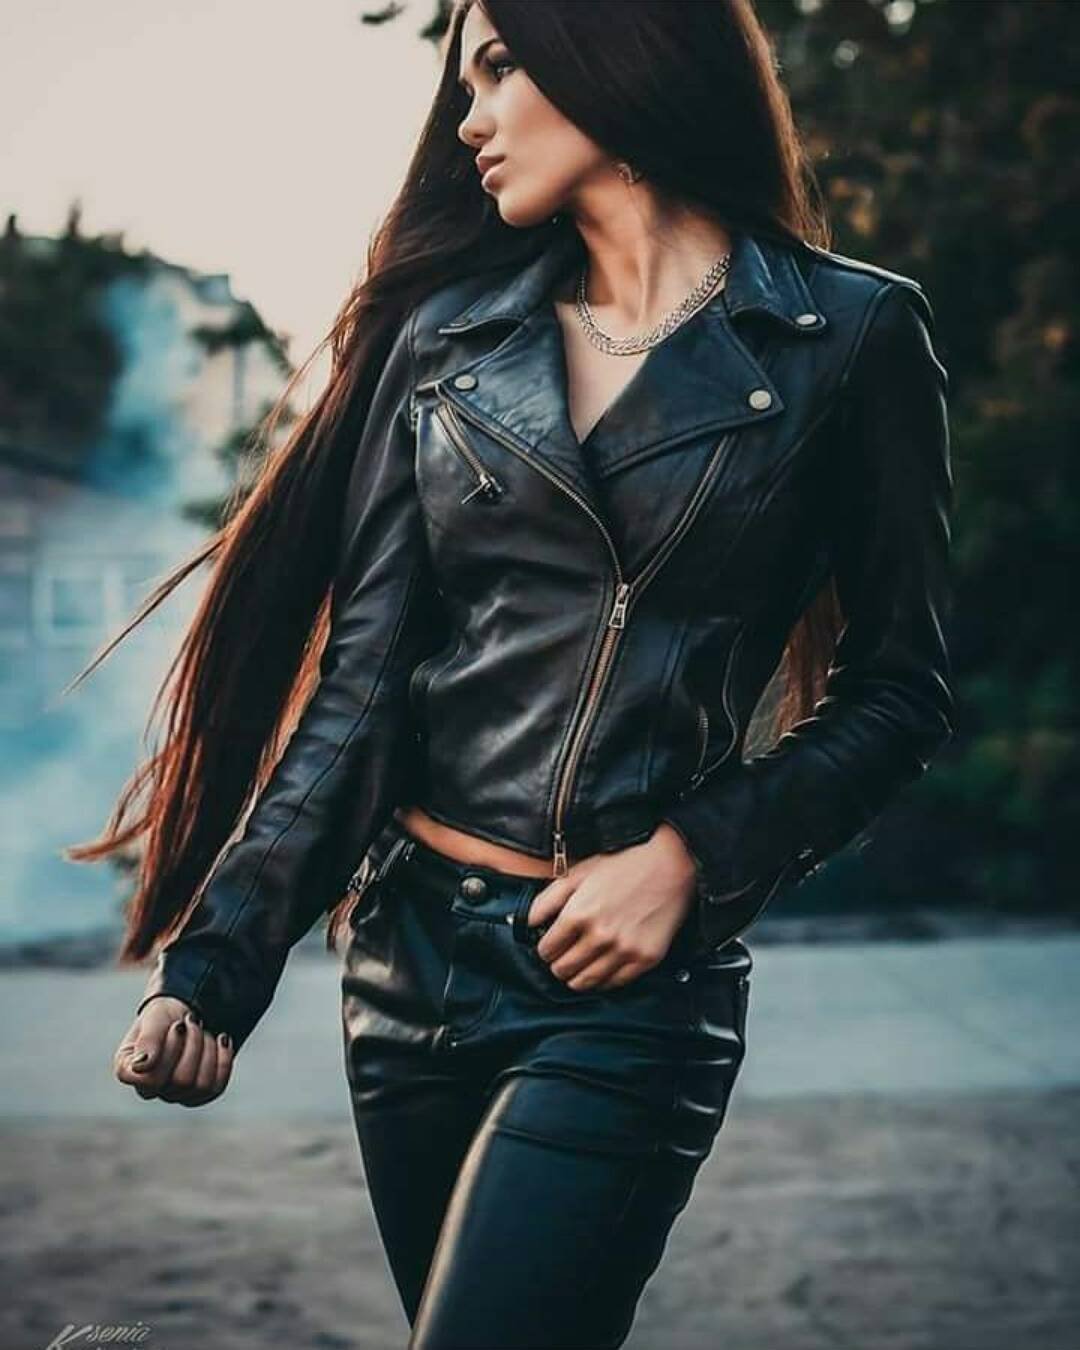 Девушка с длинными черными волосами снимает кожаную куртку